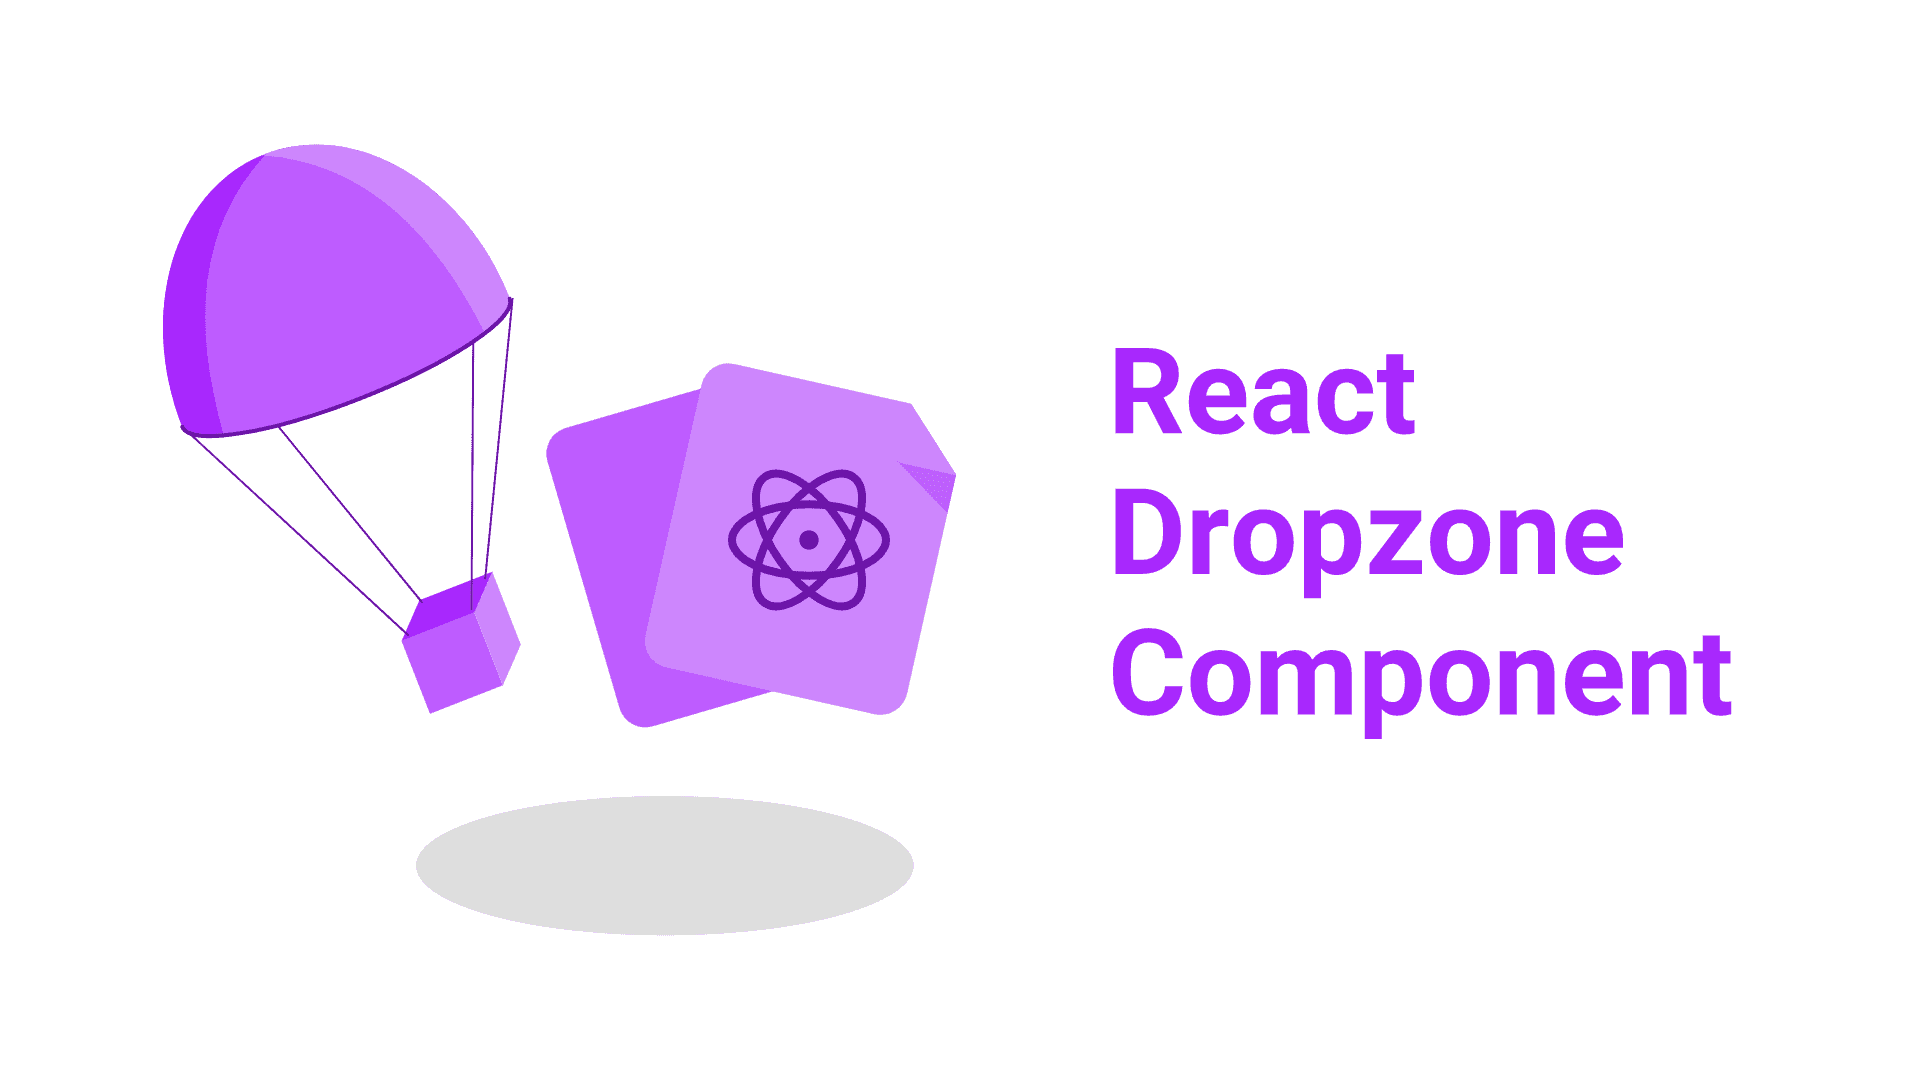 react dropzone